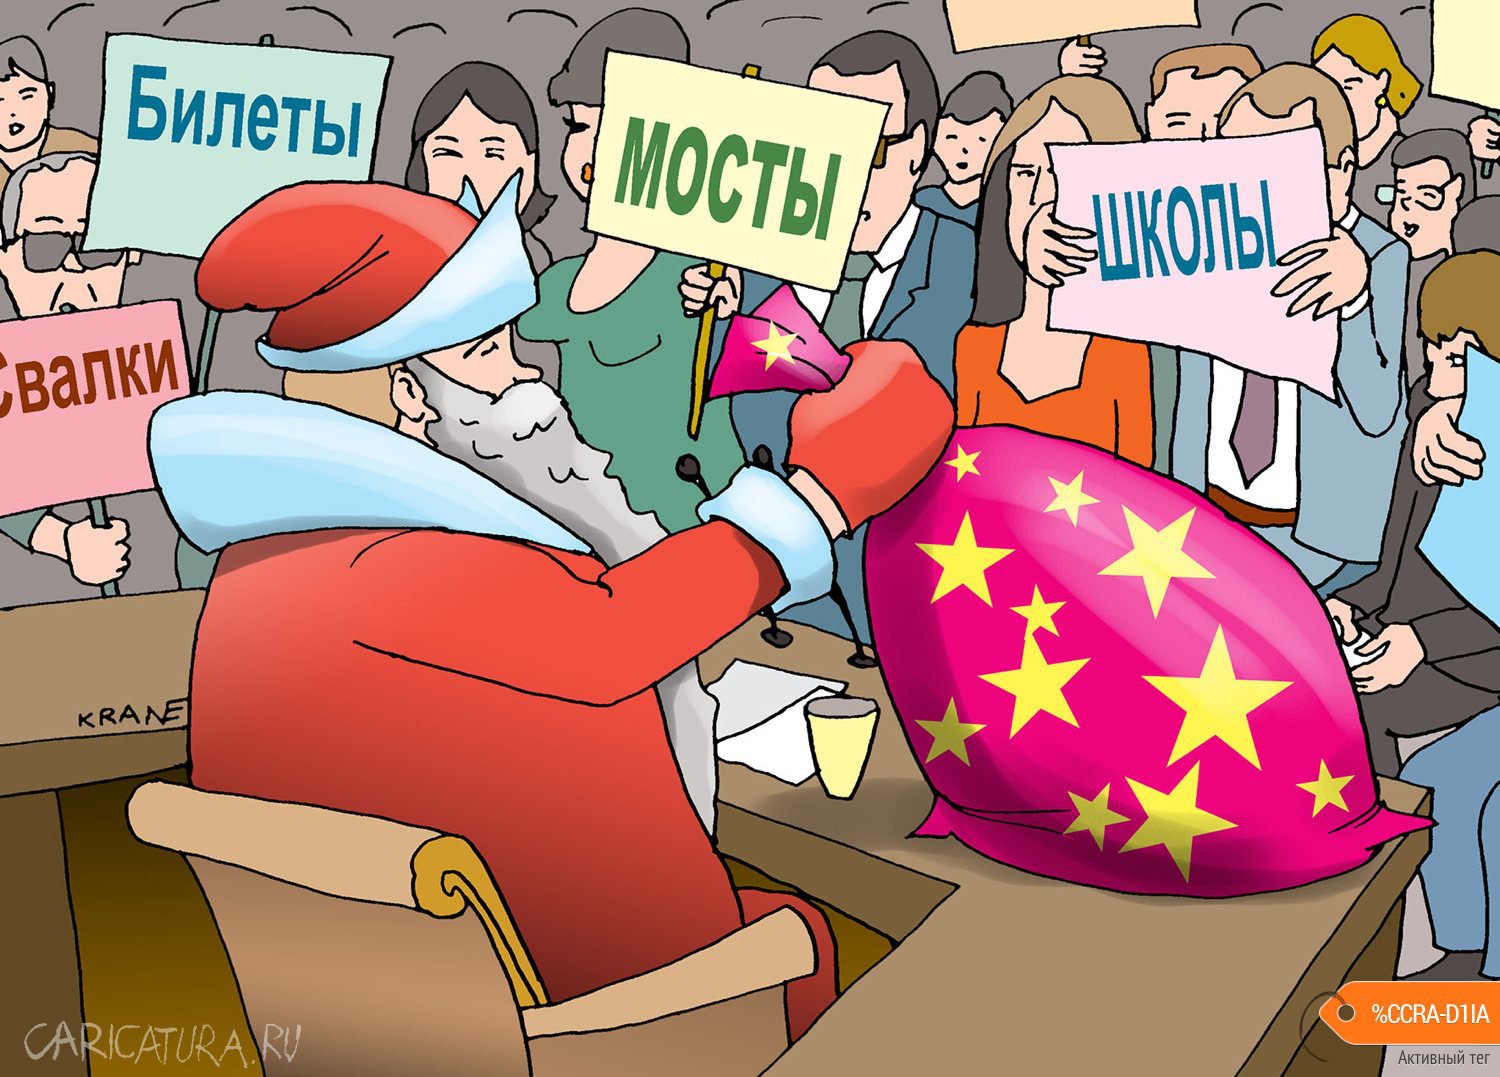 Карикатура "Путин ответил на вопросы журналистов", Евгений Кран